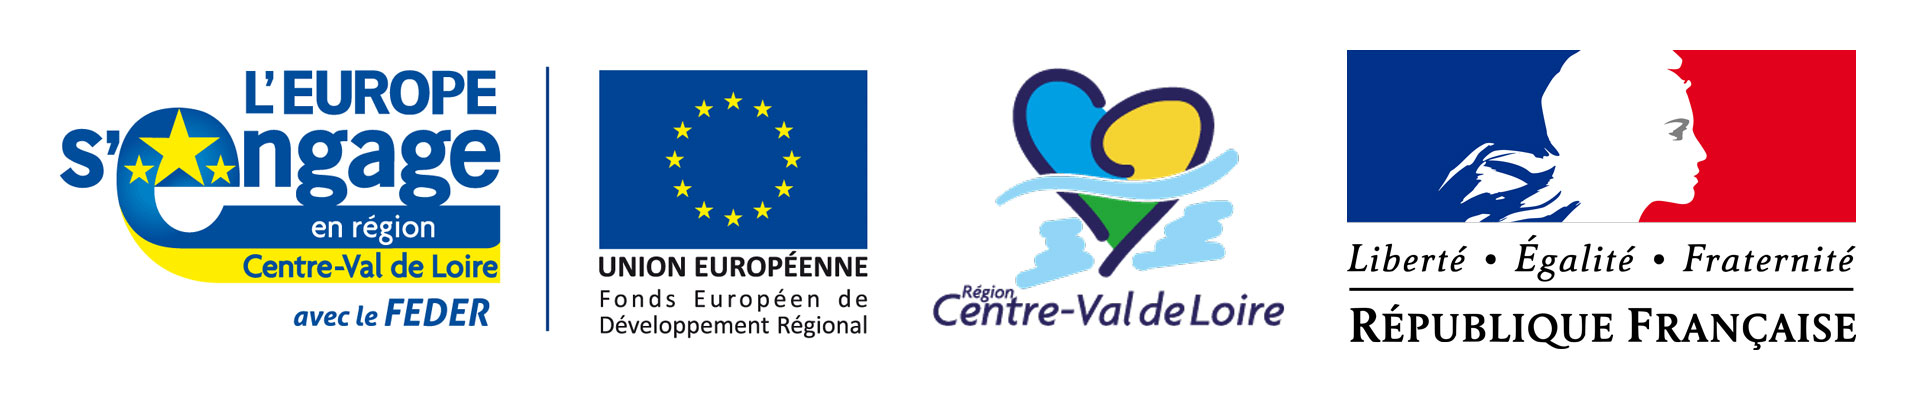 Logos Union européenne Feder + Région Centre-Val de Loire + République française